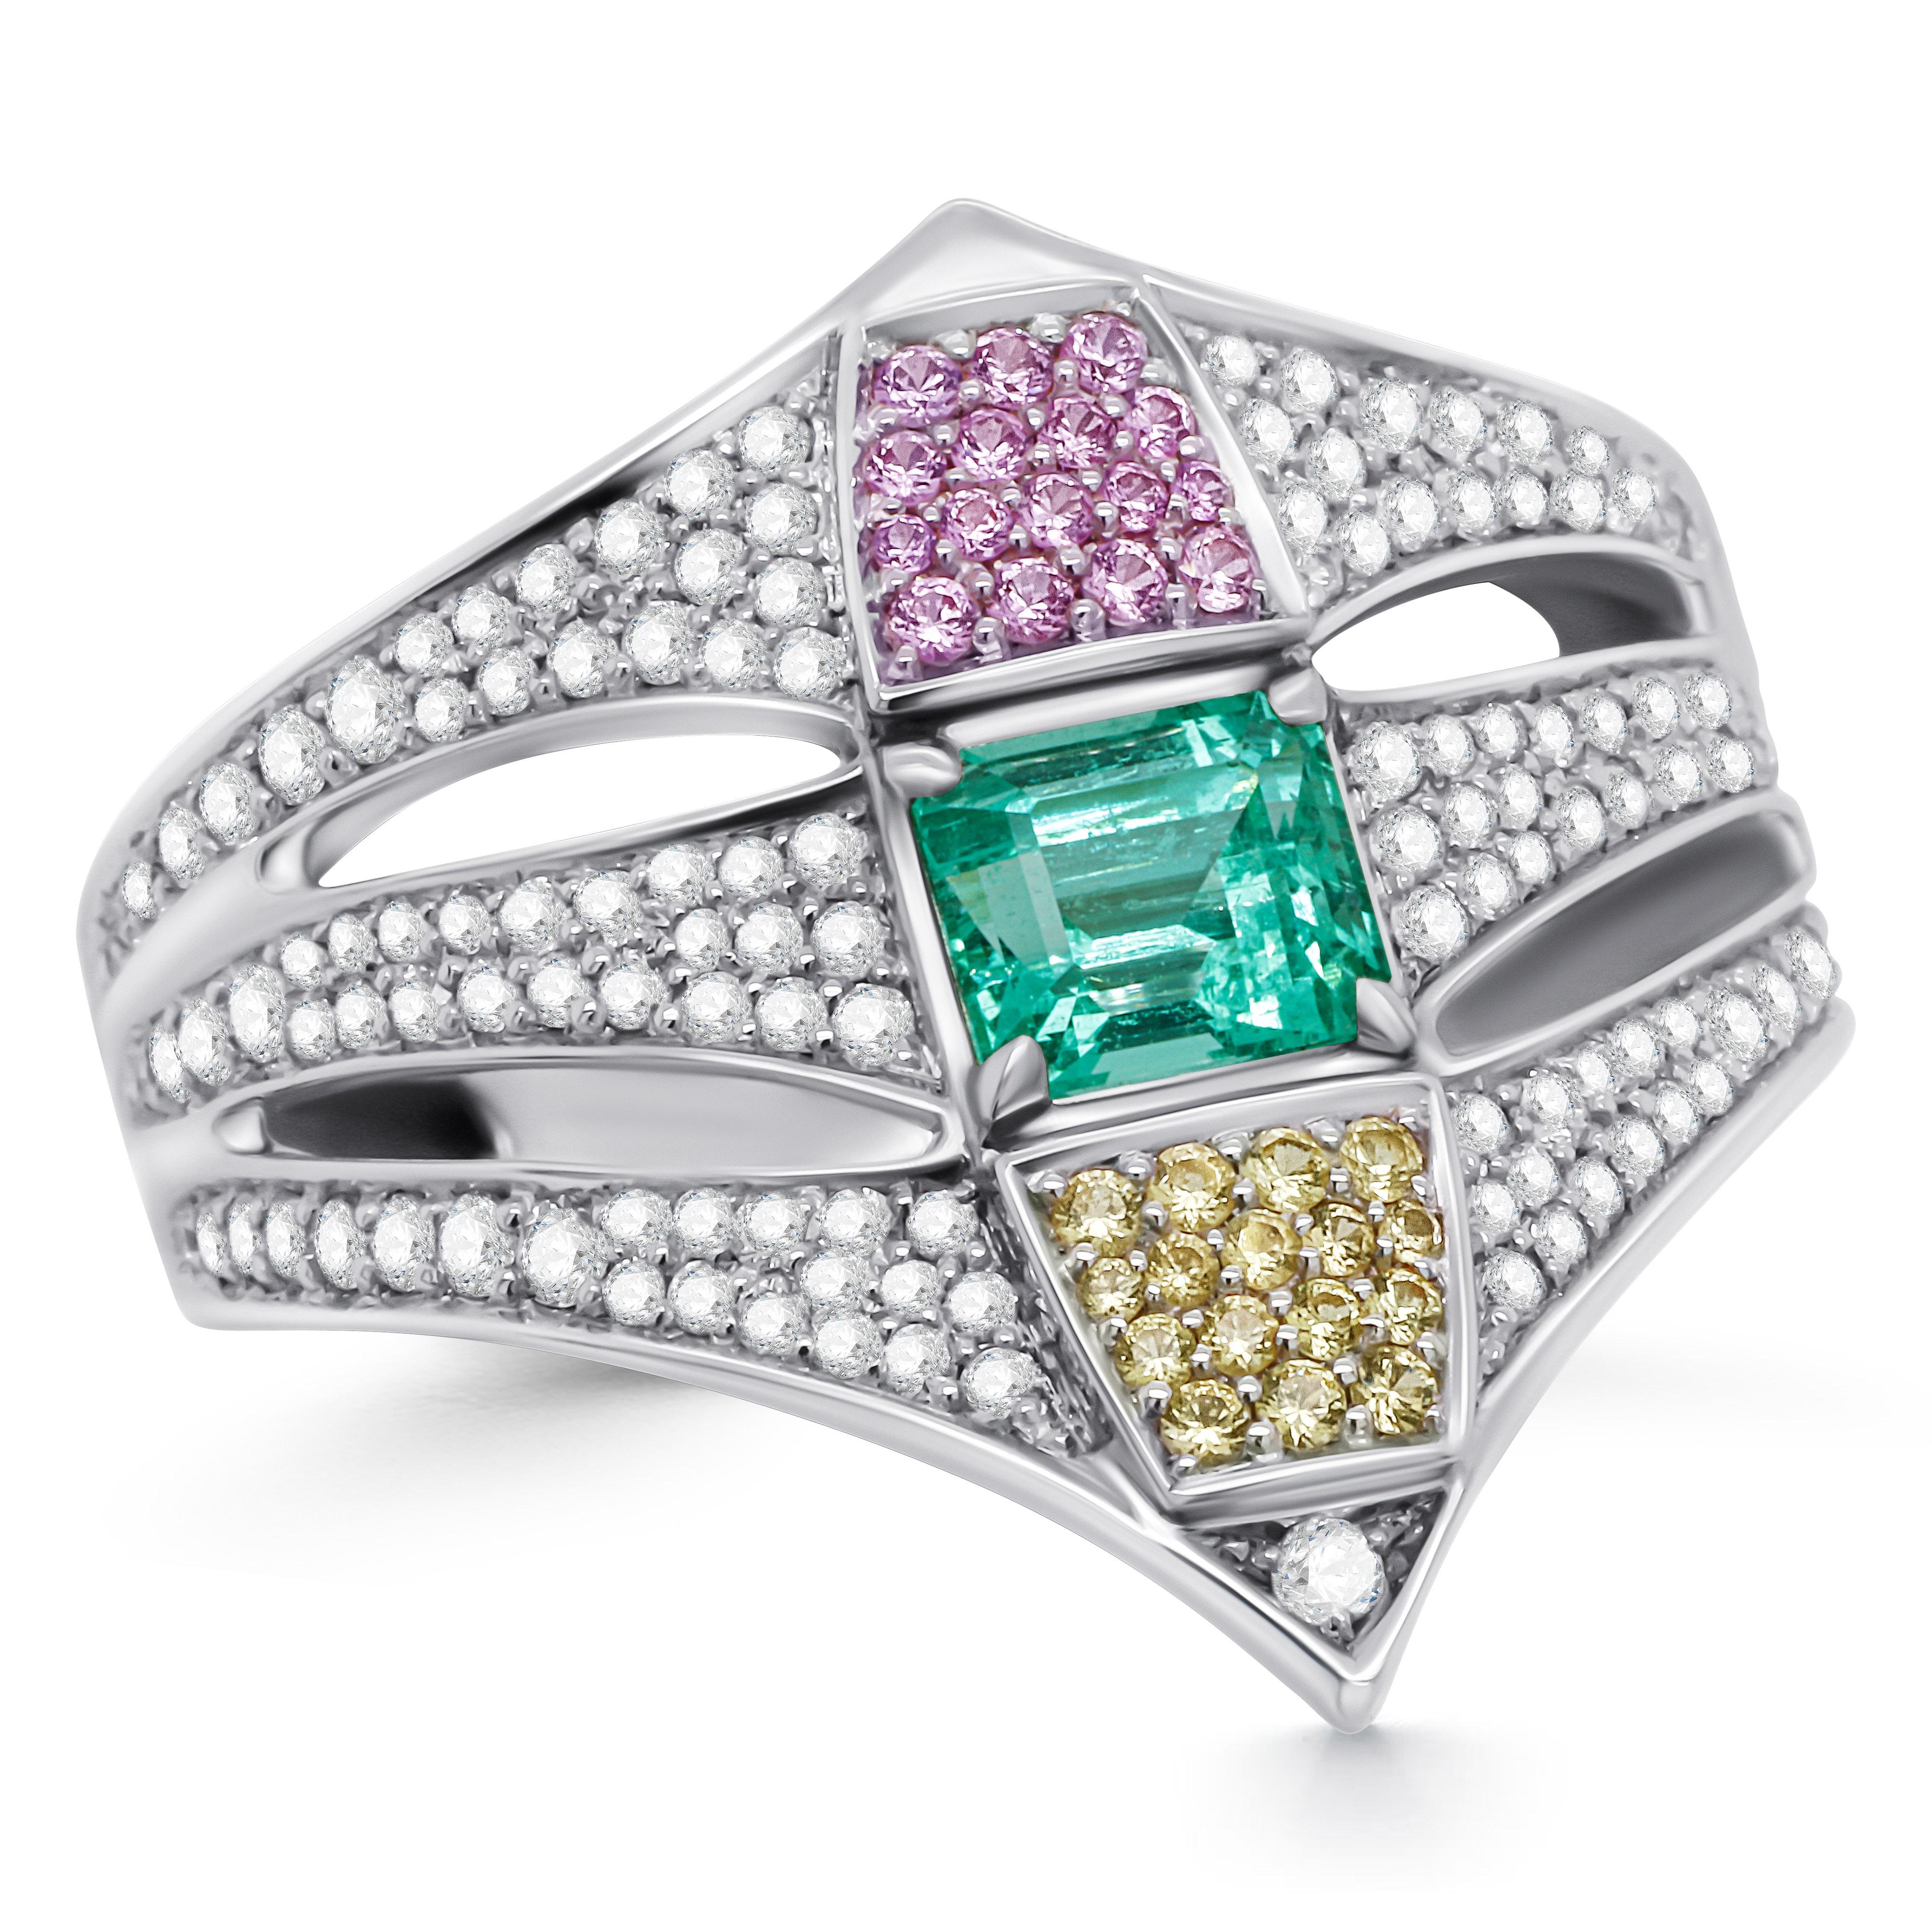 Ein besonderer Ring mit drei Clustern, mit einem neongrünen Smaragd in der Mitte und zwei Strahlen aus rosa und gelben Saphiren oben und unten, umrahmt von verstreuten Diamanten.
Dieses Design ist eine Synergie aus Motiven des späten 19.